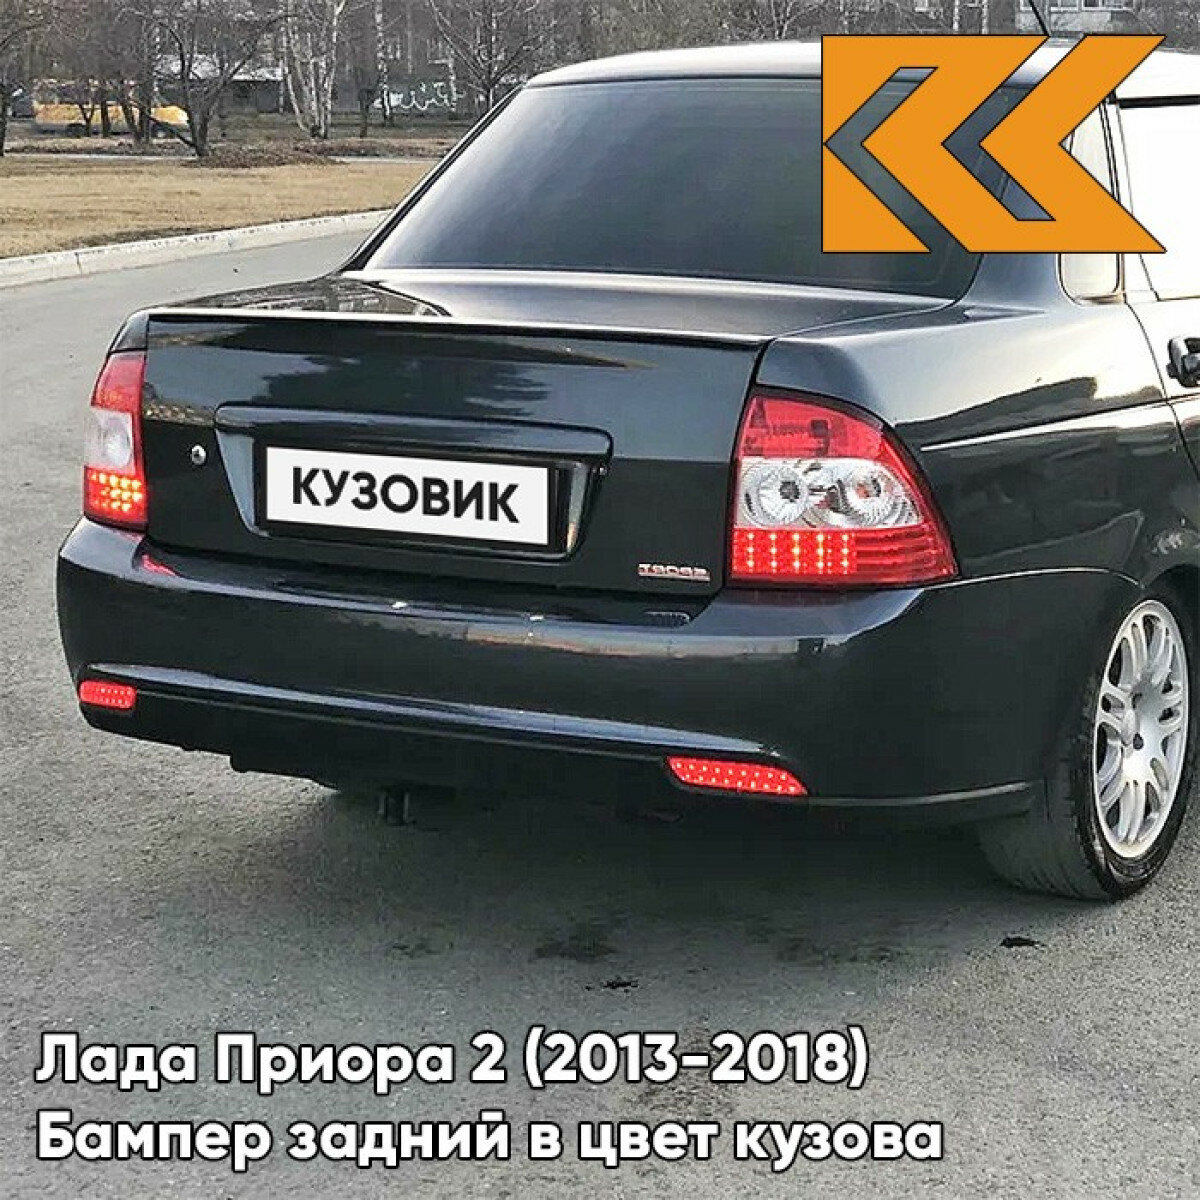 Бампер задний в цвет Лада Приора 2 (2013-2018) седан 672 - Черная Пантера - Черный